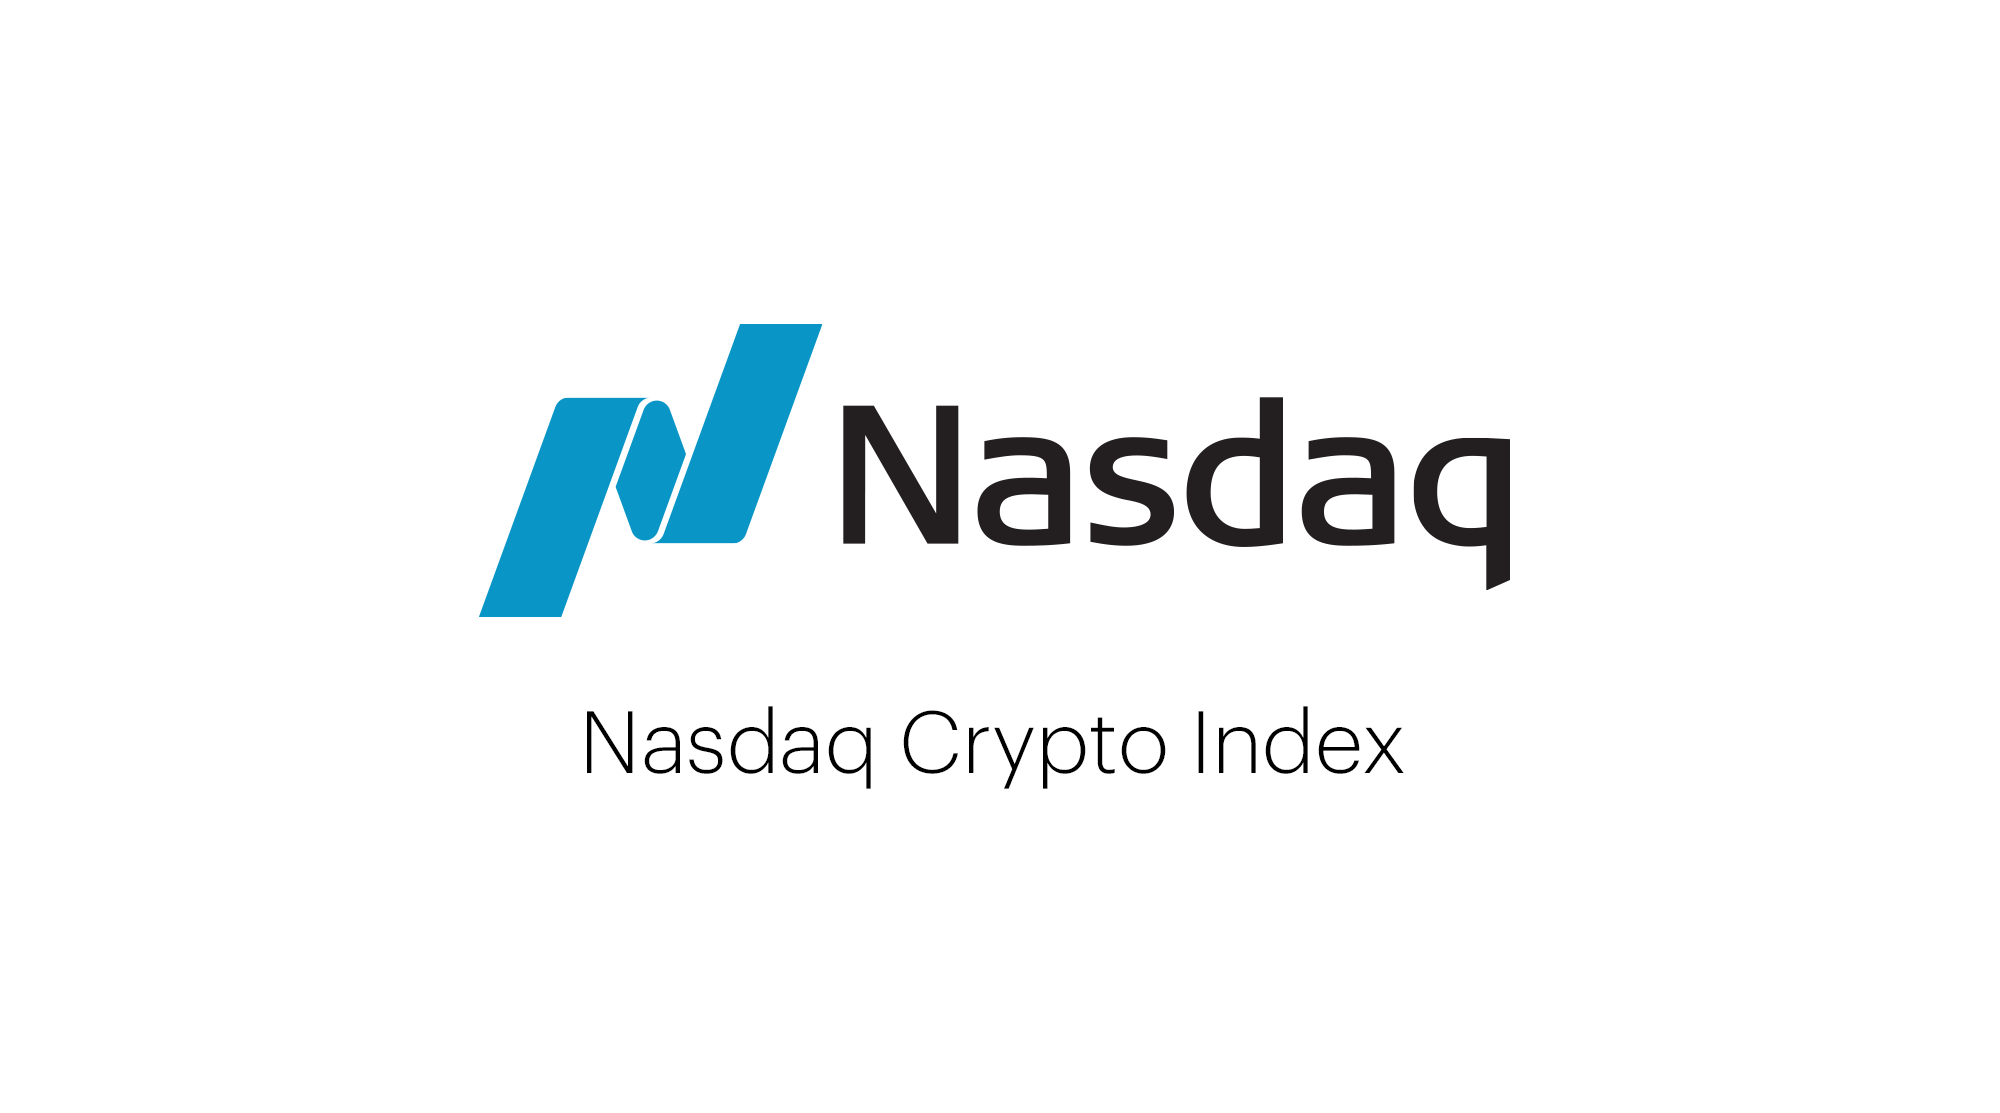 Nasdaq Crypto Index Family - Reconstitution Announcement